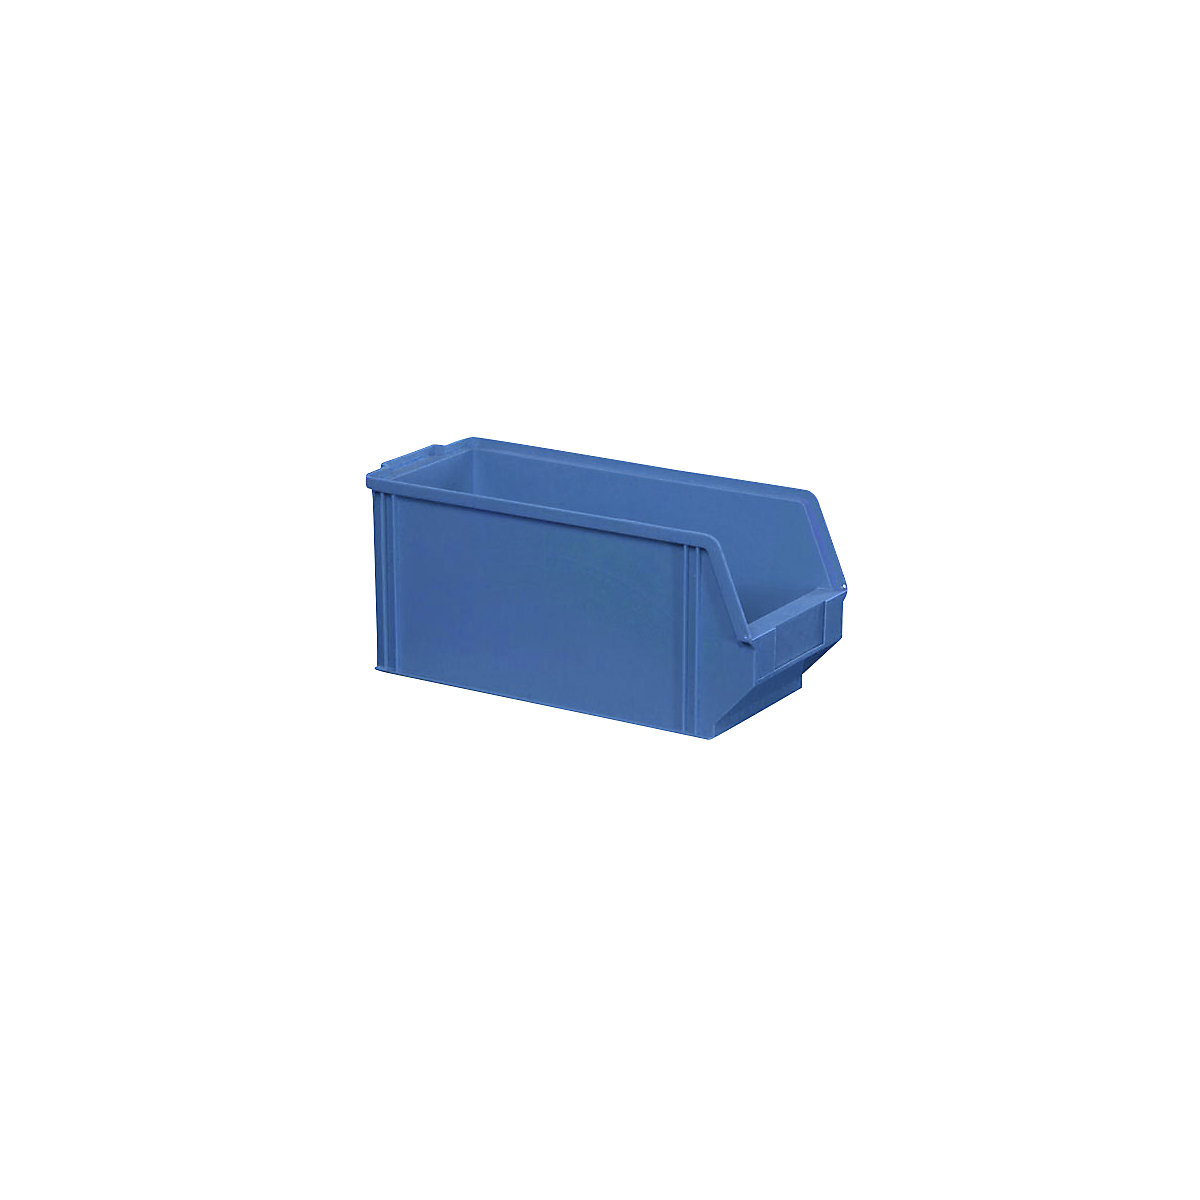 Sichtlagerkasten aus Polystyrol, Länge 350 mm, BxH 146 x 150 mm, VE 28 Stk, blau-6